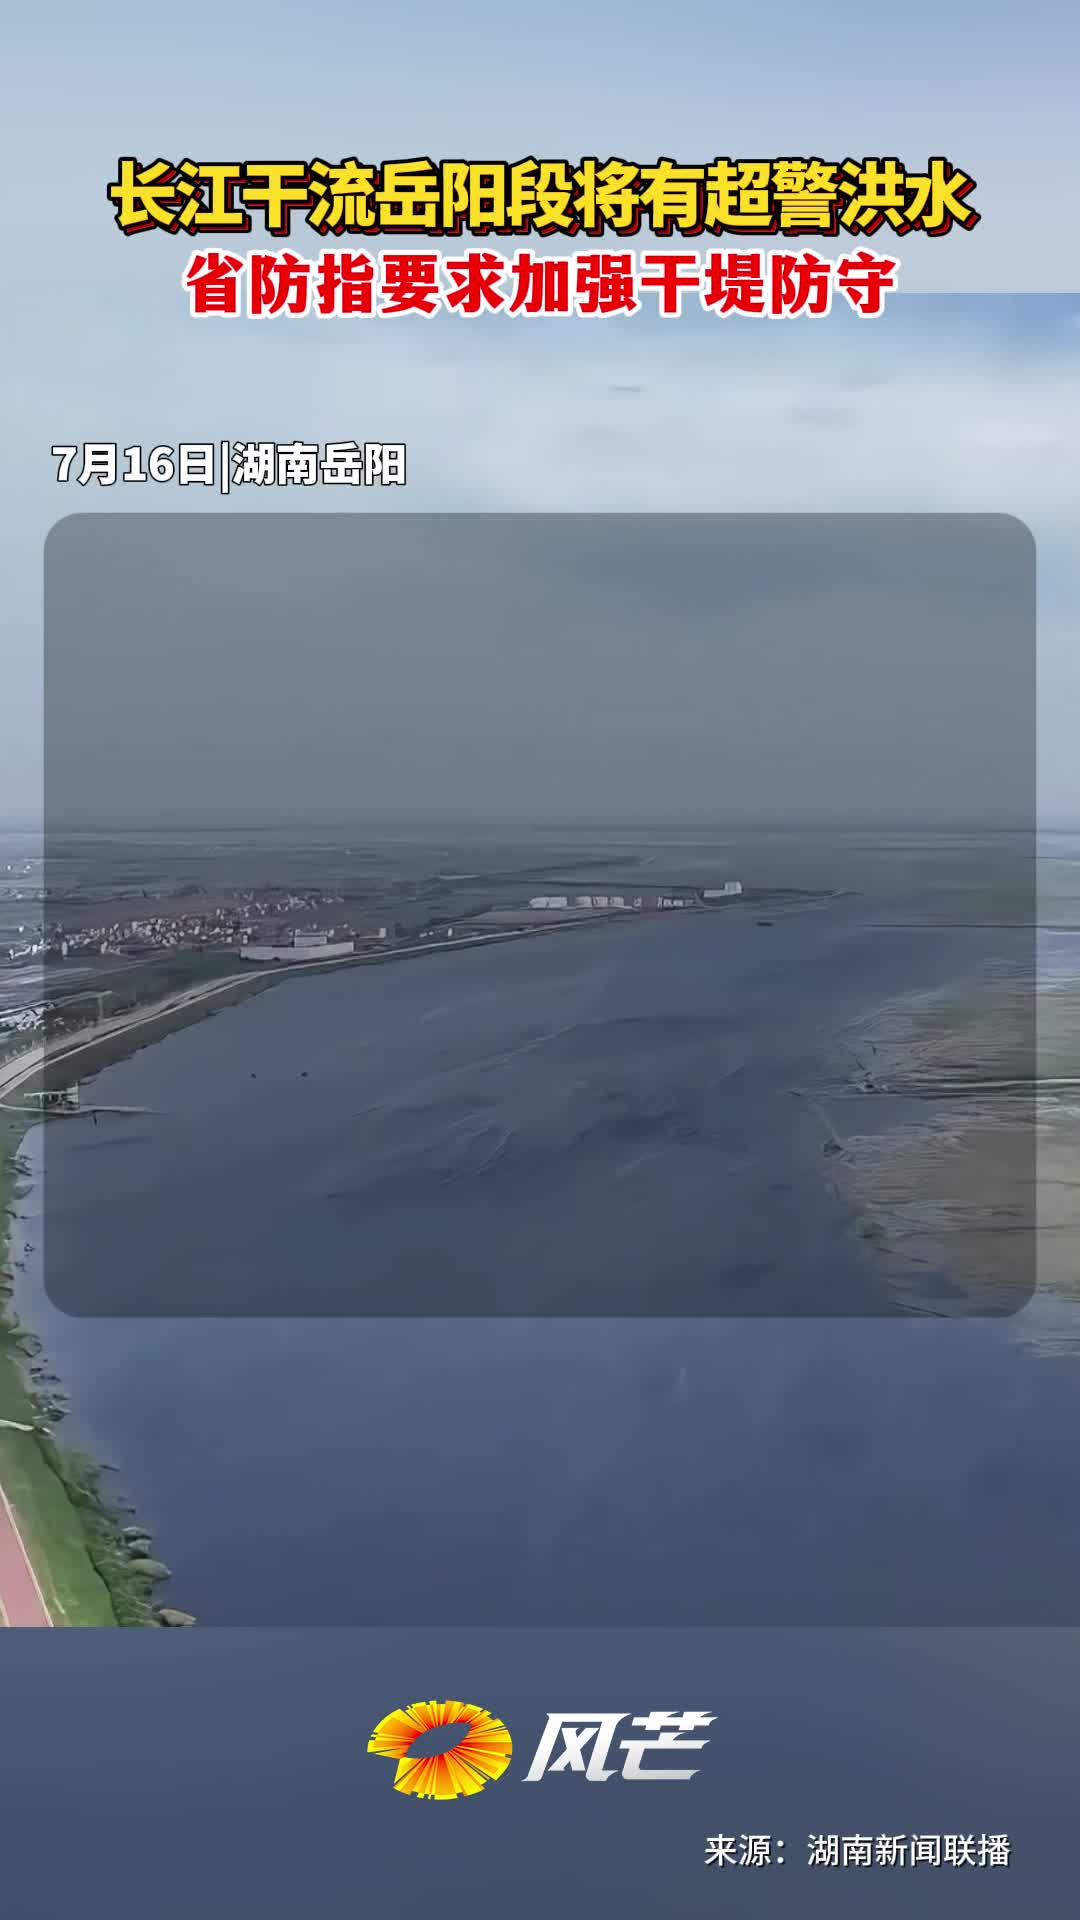 长江干流岳阳段将有超警洪水 省防指要求加强干堤防守